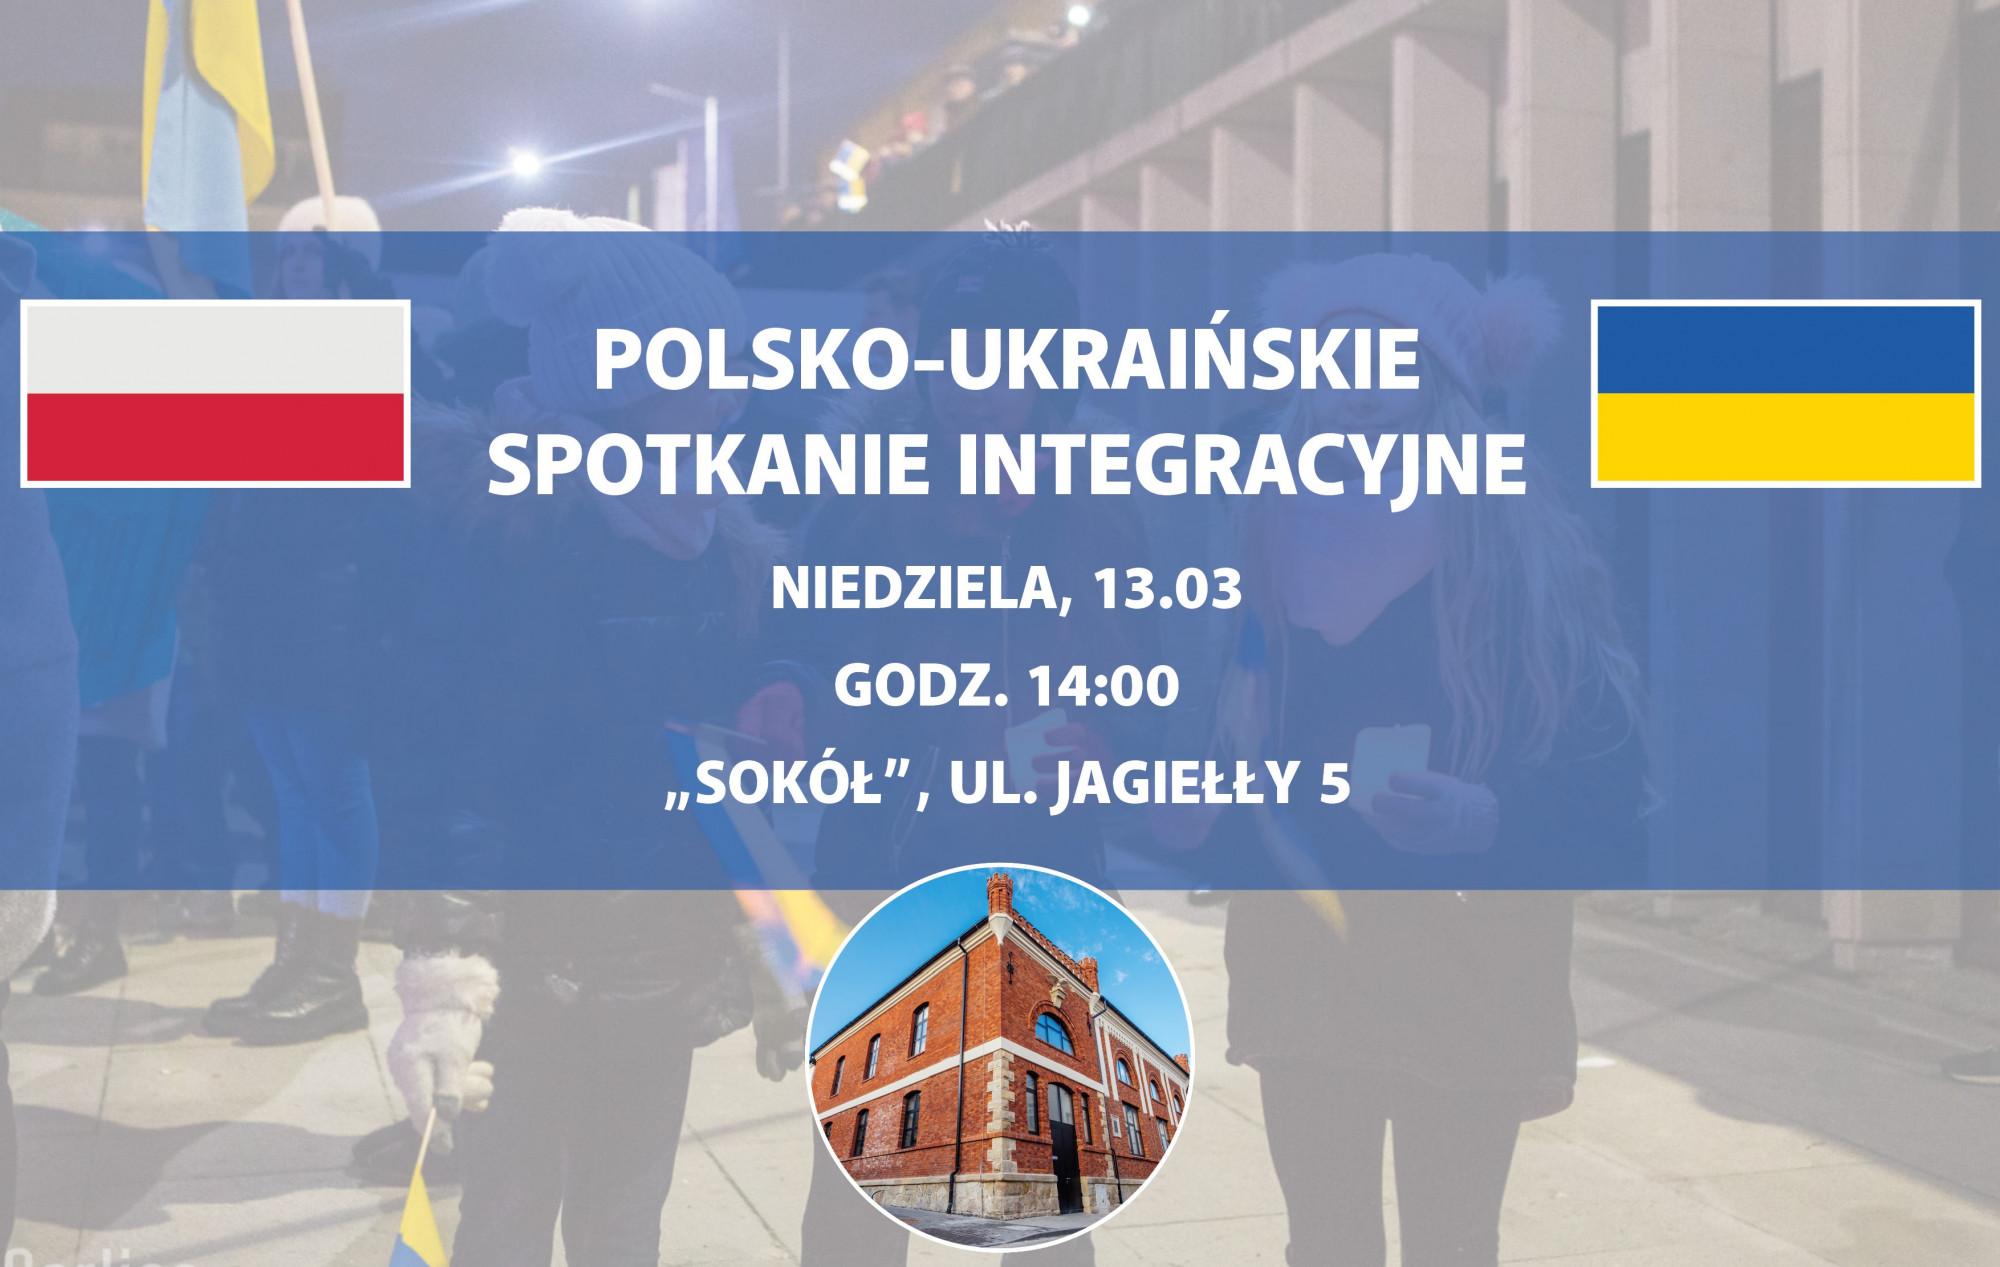 Polsko-ukraińskie spotkanie integracyjne